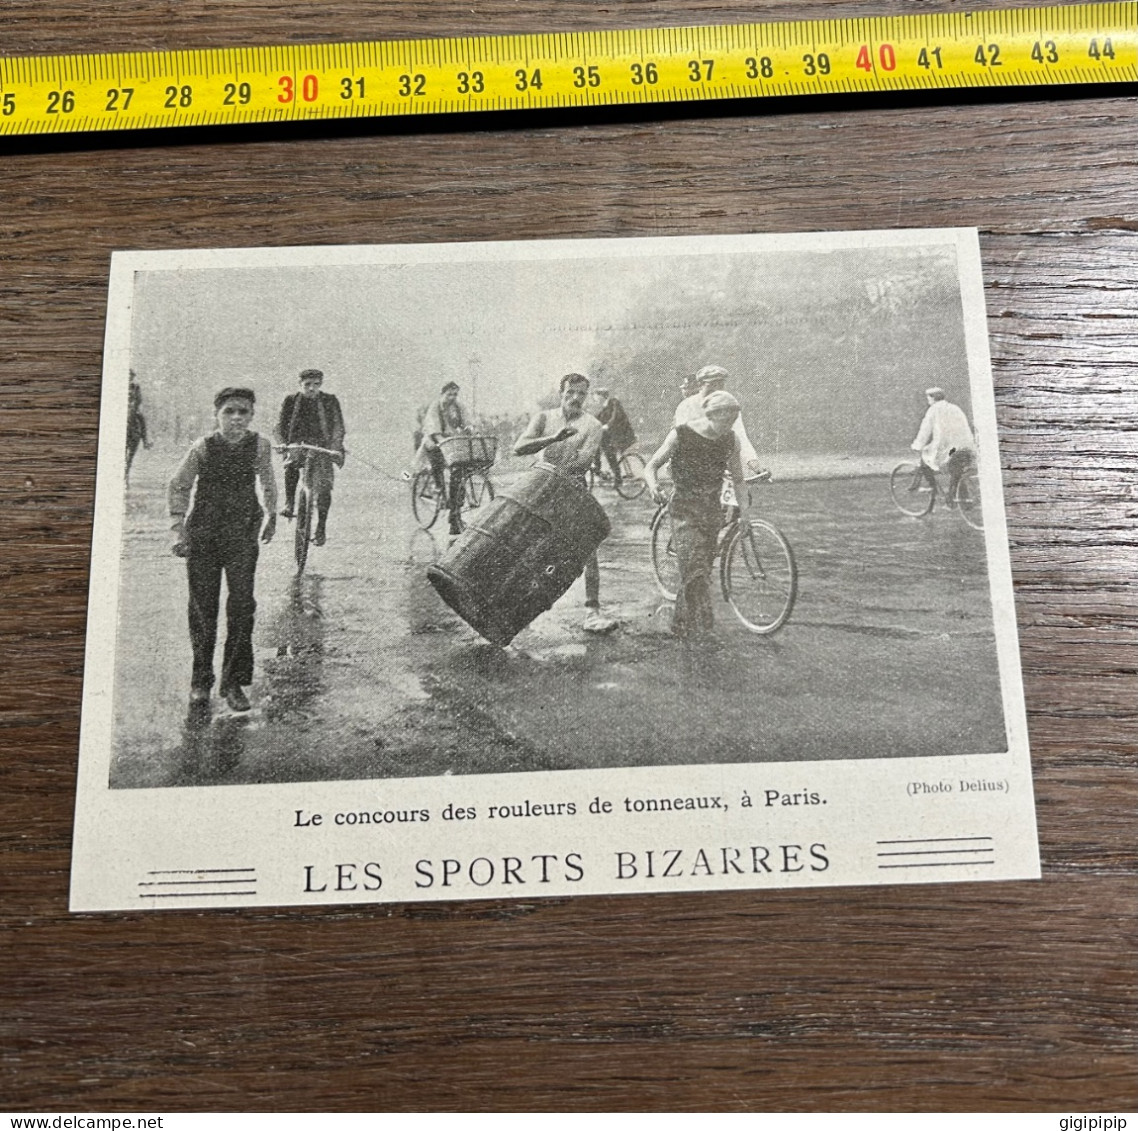 1908 PATI Sports Bizarres Concours Des Rouleurs De Tonneaux, à Paris Jules Pierret - Collections